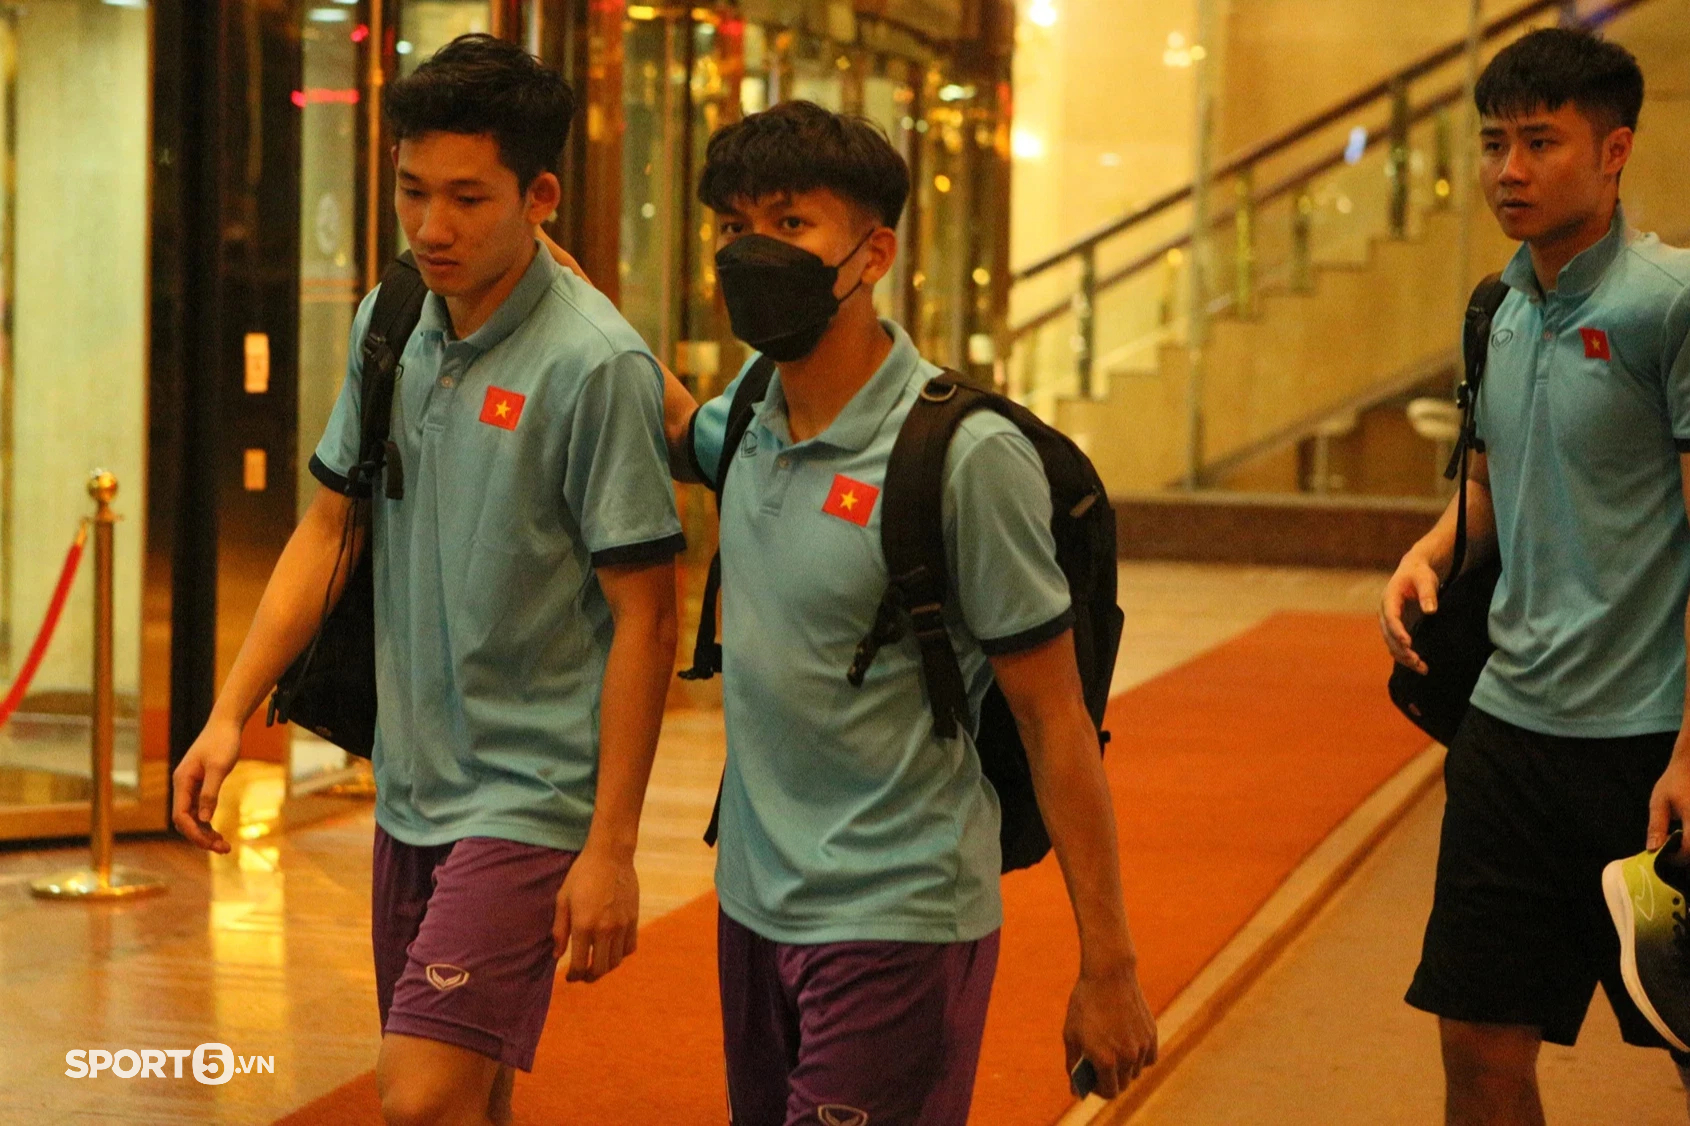 U23 Việt Nam trở về khách sạn với dáng vẻ mệt mỏi sau buổi tập luyện ngày 25/4 - Ảnh 2.